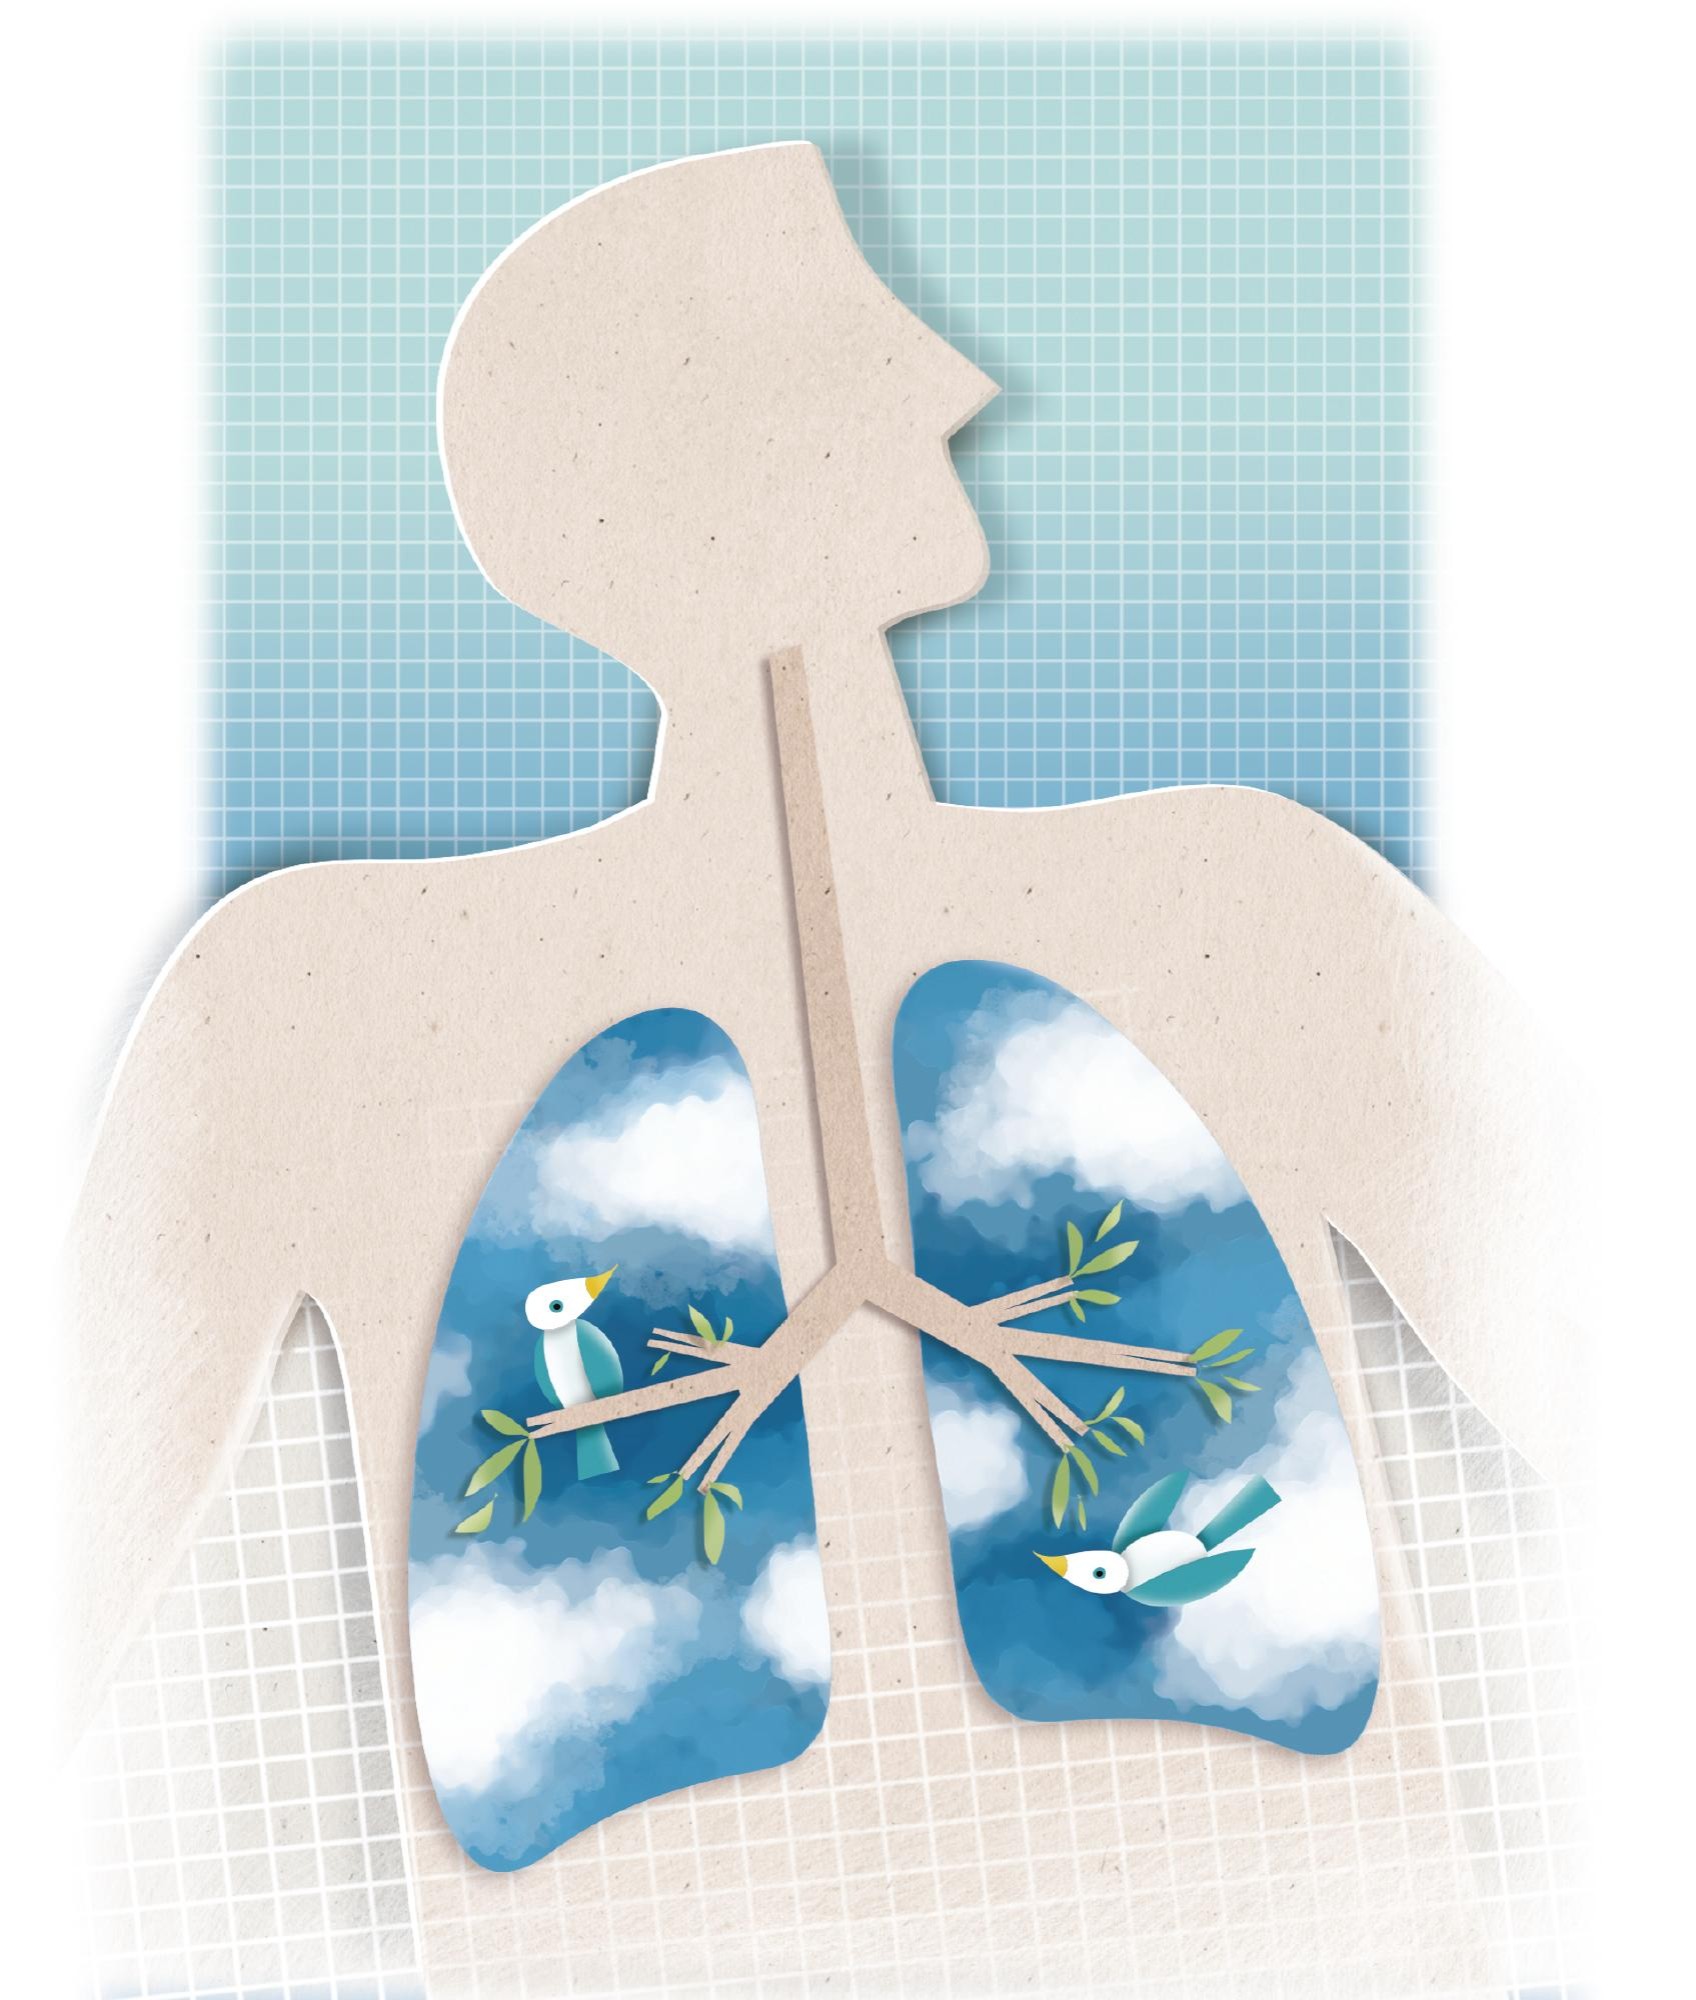 Cuatro ventajas de respirar bien